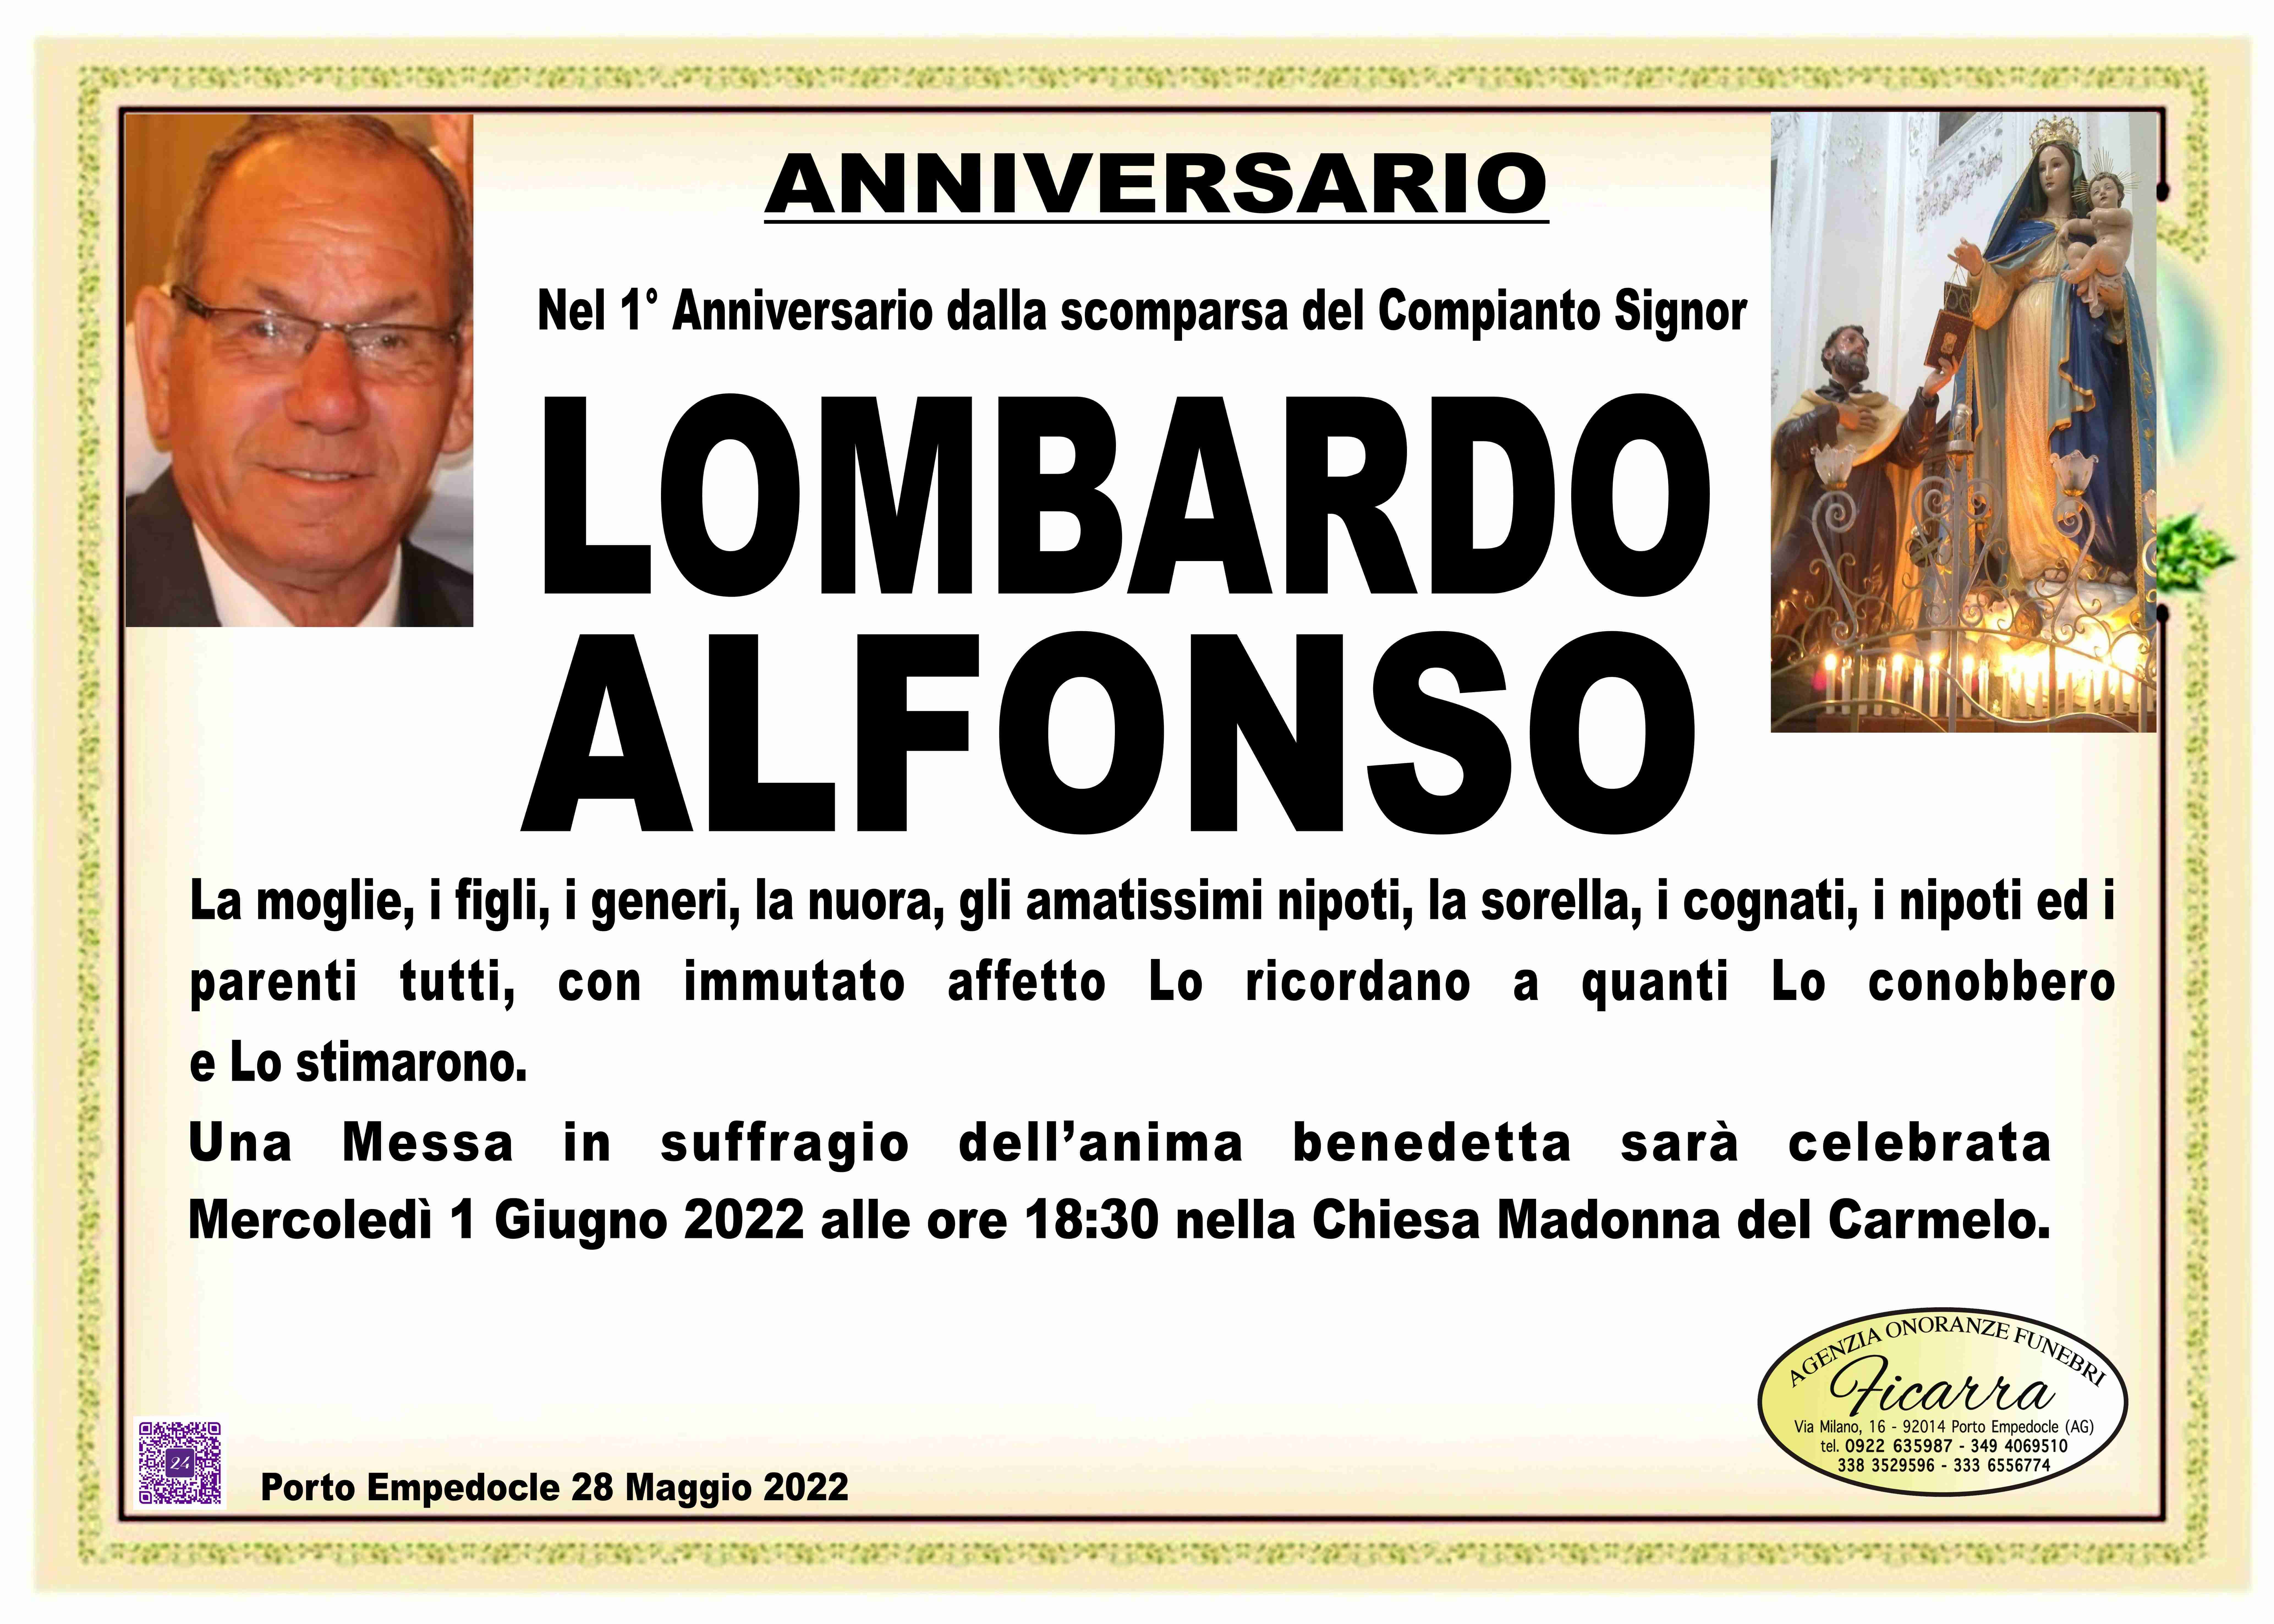 Alfonso Lombardo